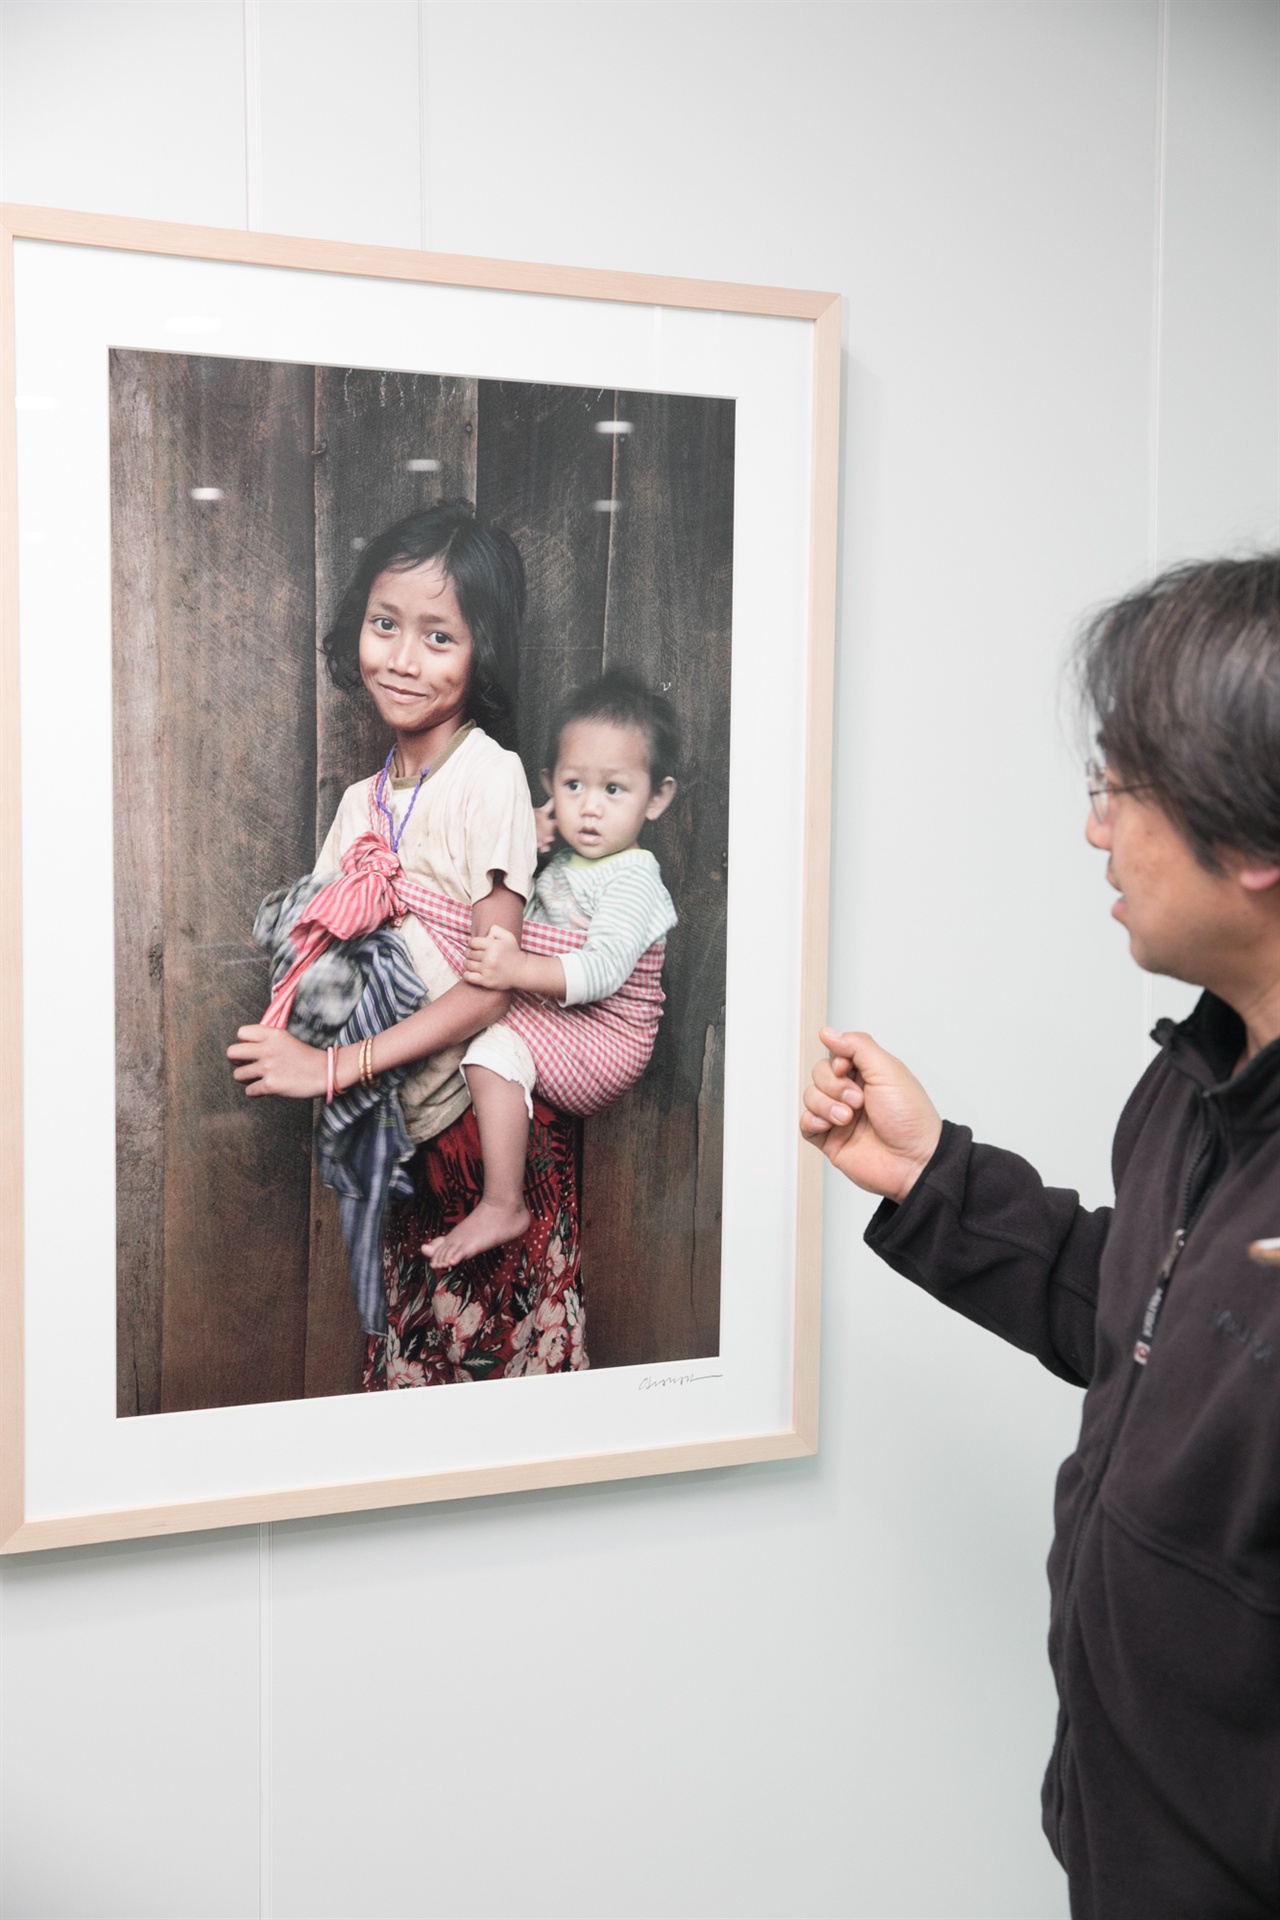  캄보디아 어린이 돕기 모금을 위해 임대표가 구호기관에 보낸 사진